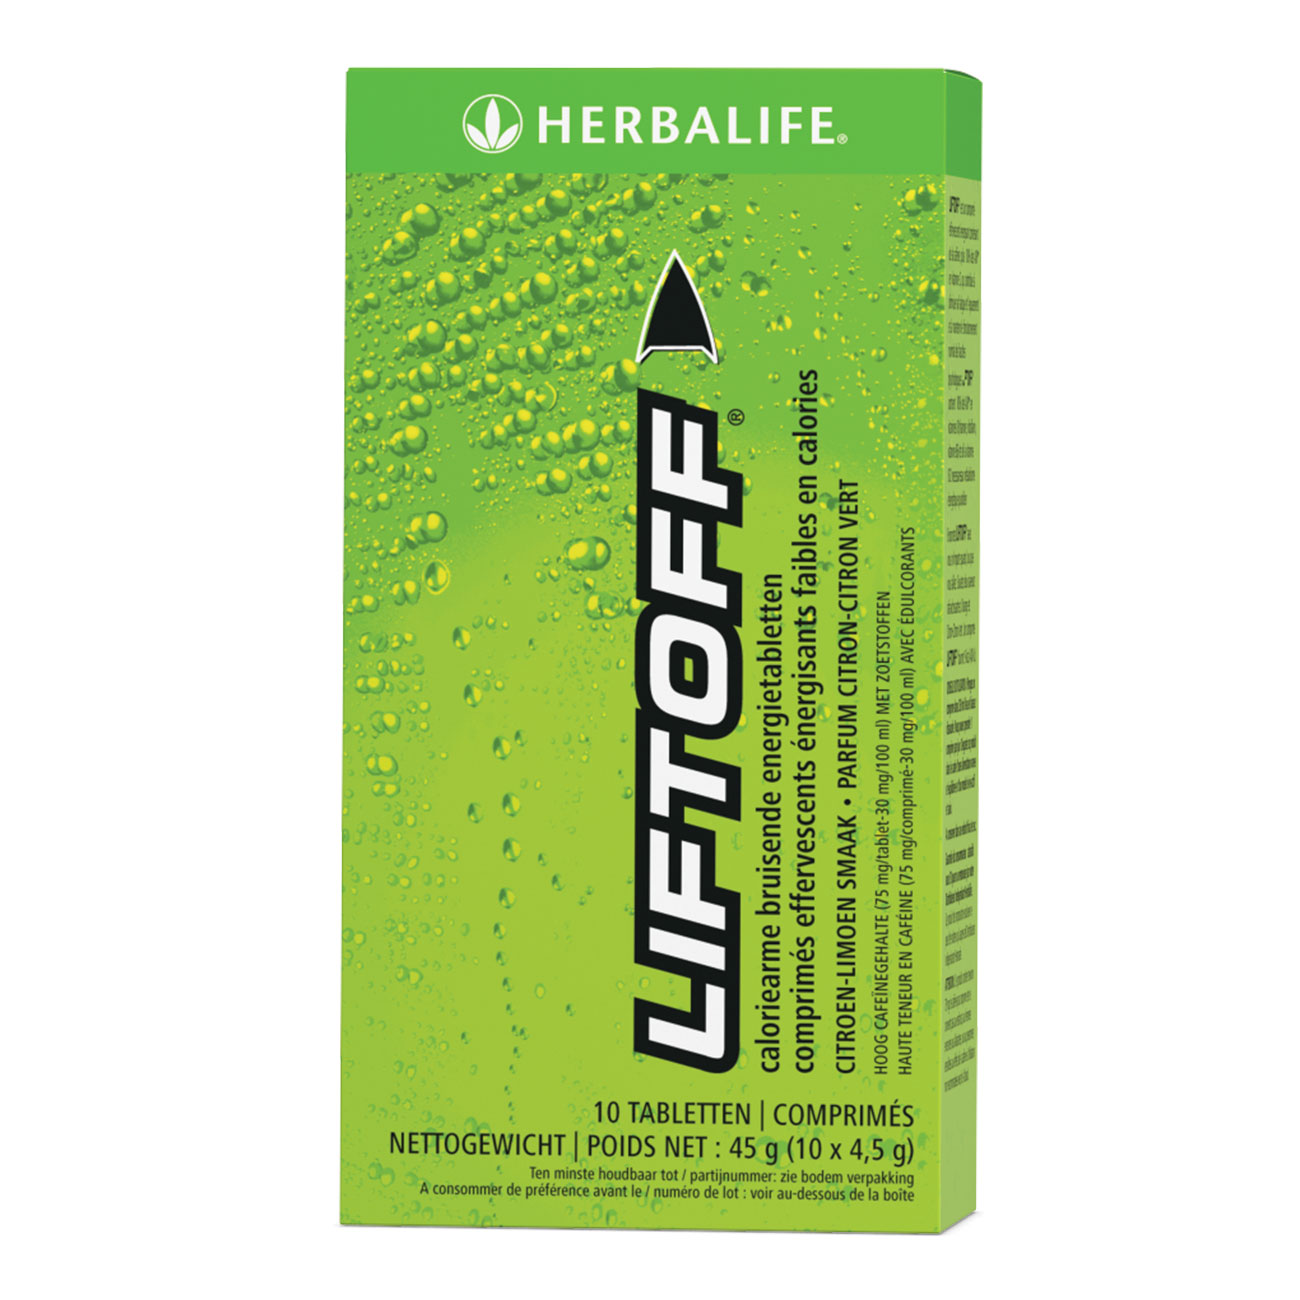 Lift Off® comprimé effervescent énergisant Citron product shot